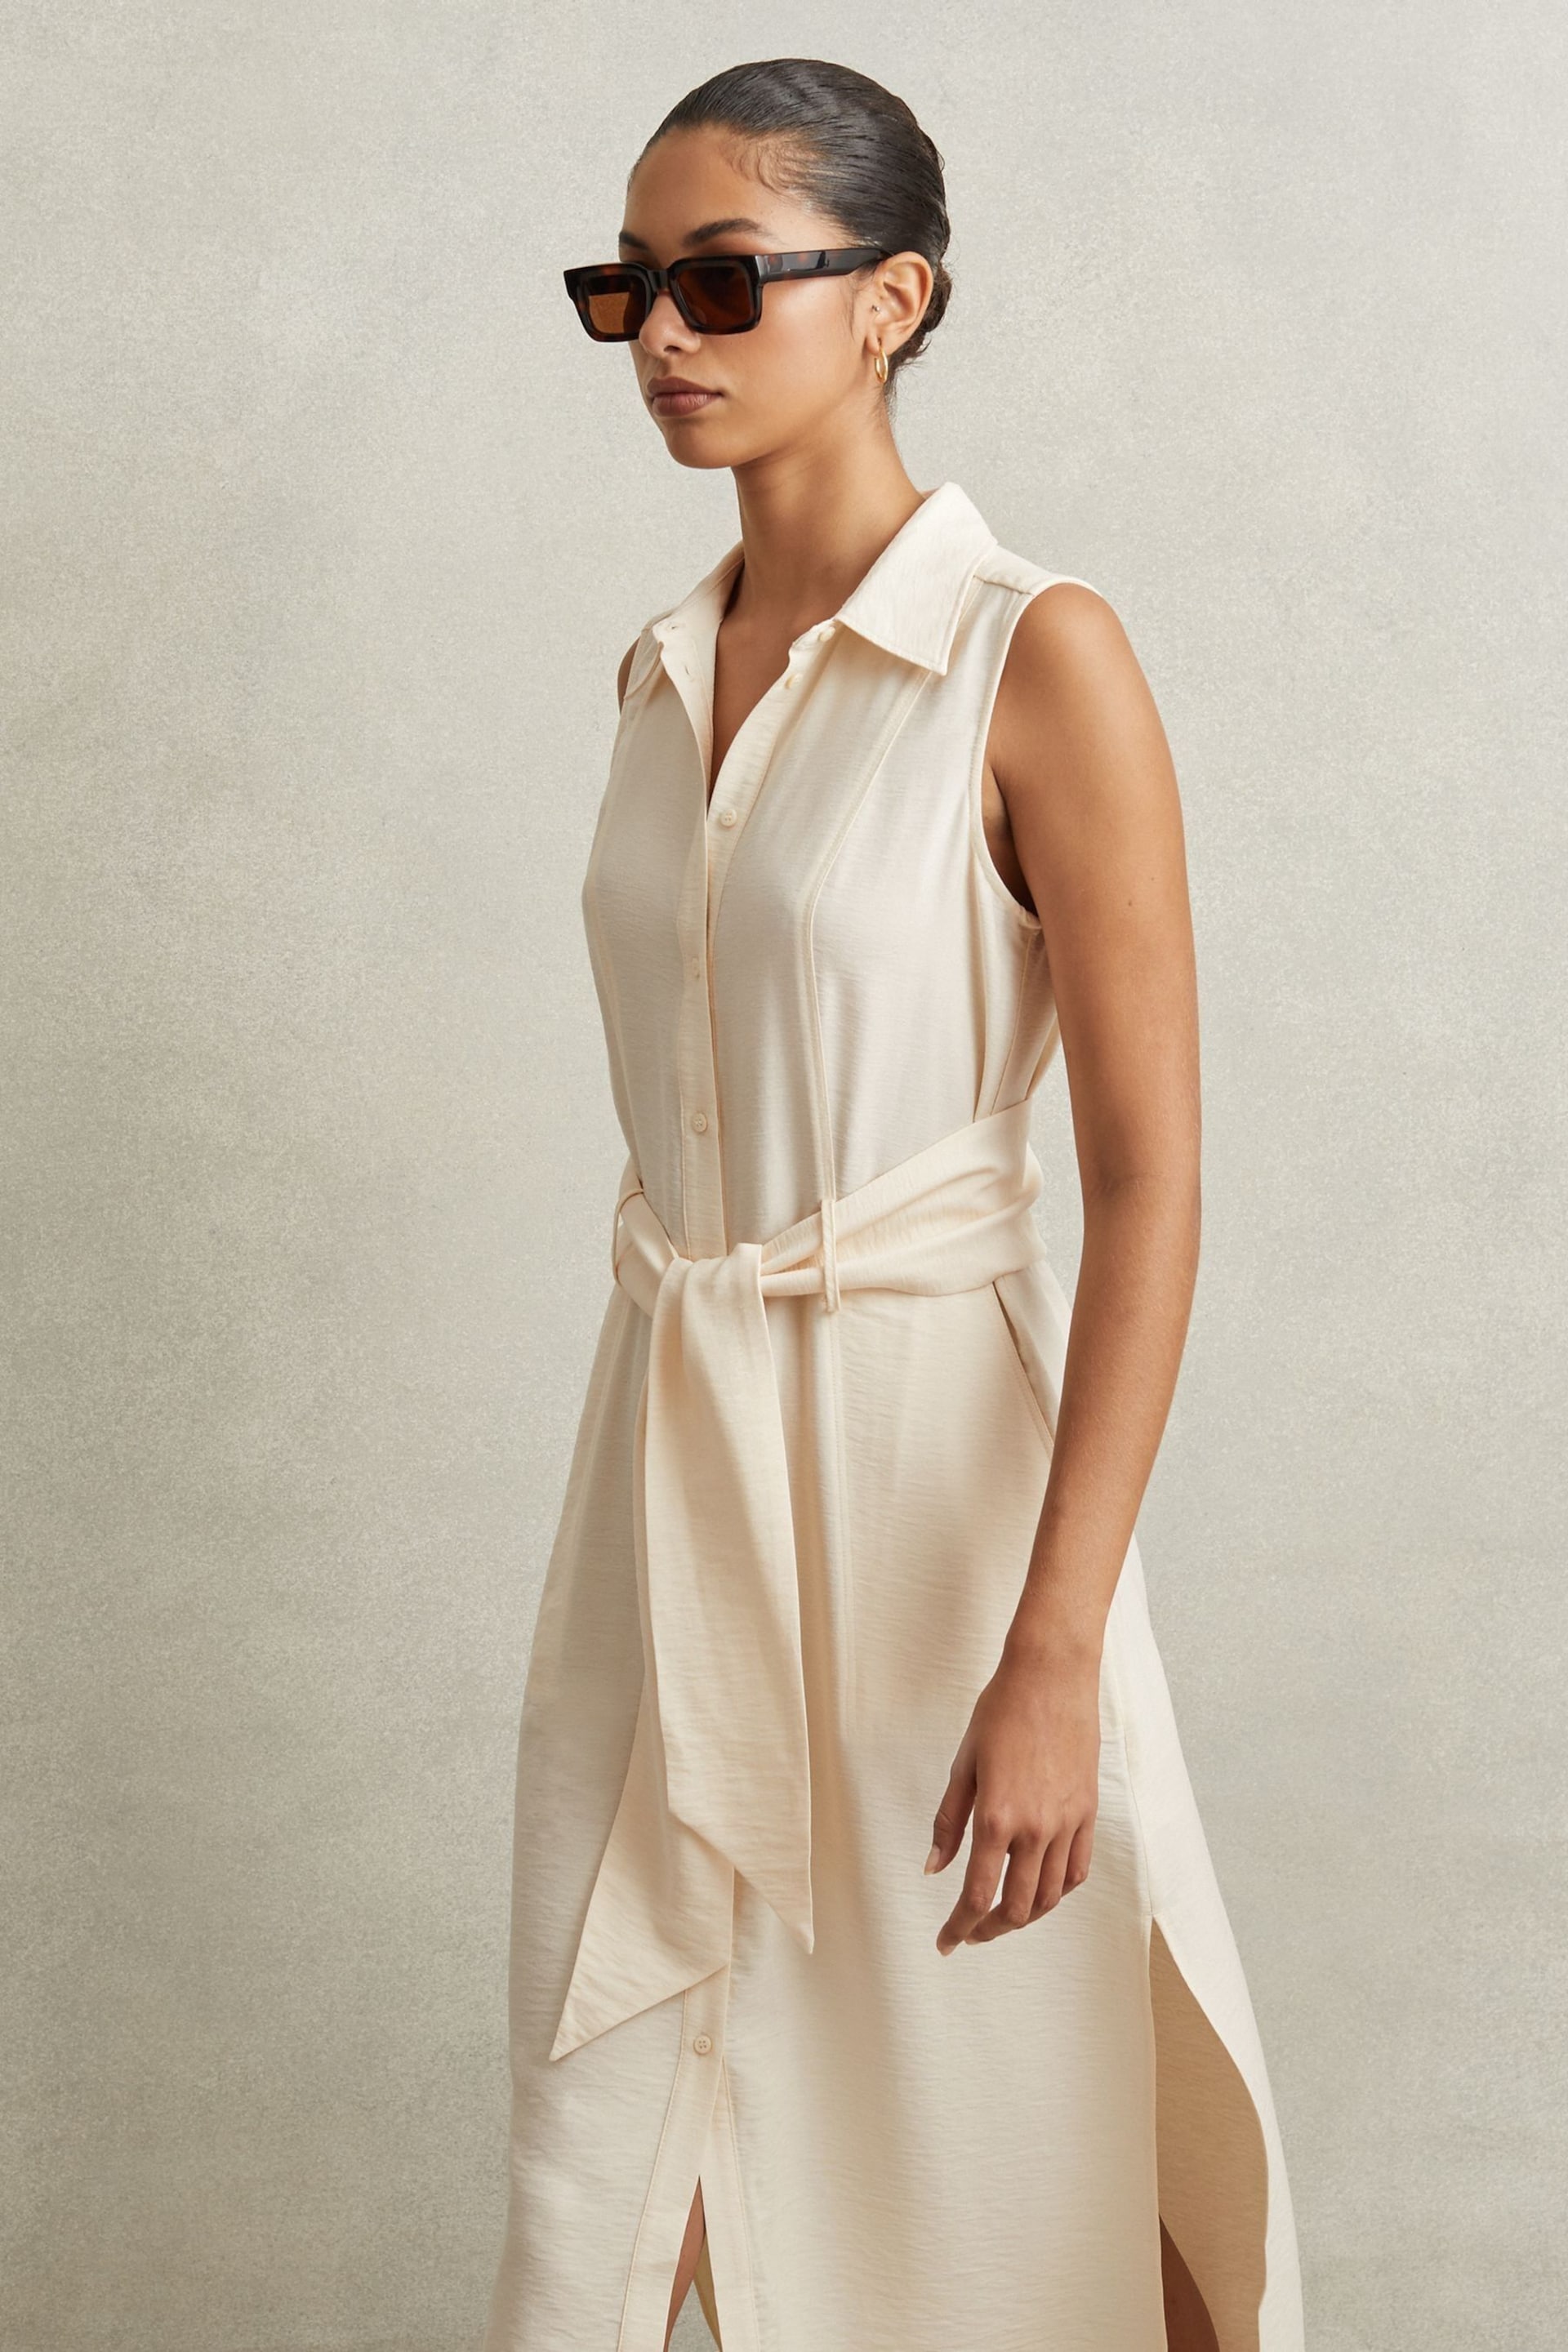 Reiss Cream Morgan Viscose Blend Belted Shirt Dress - Image 5 of 6